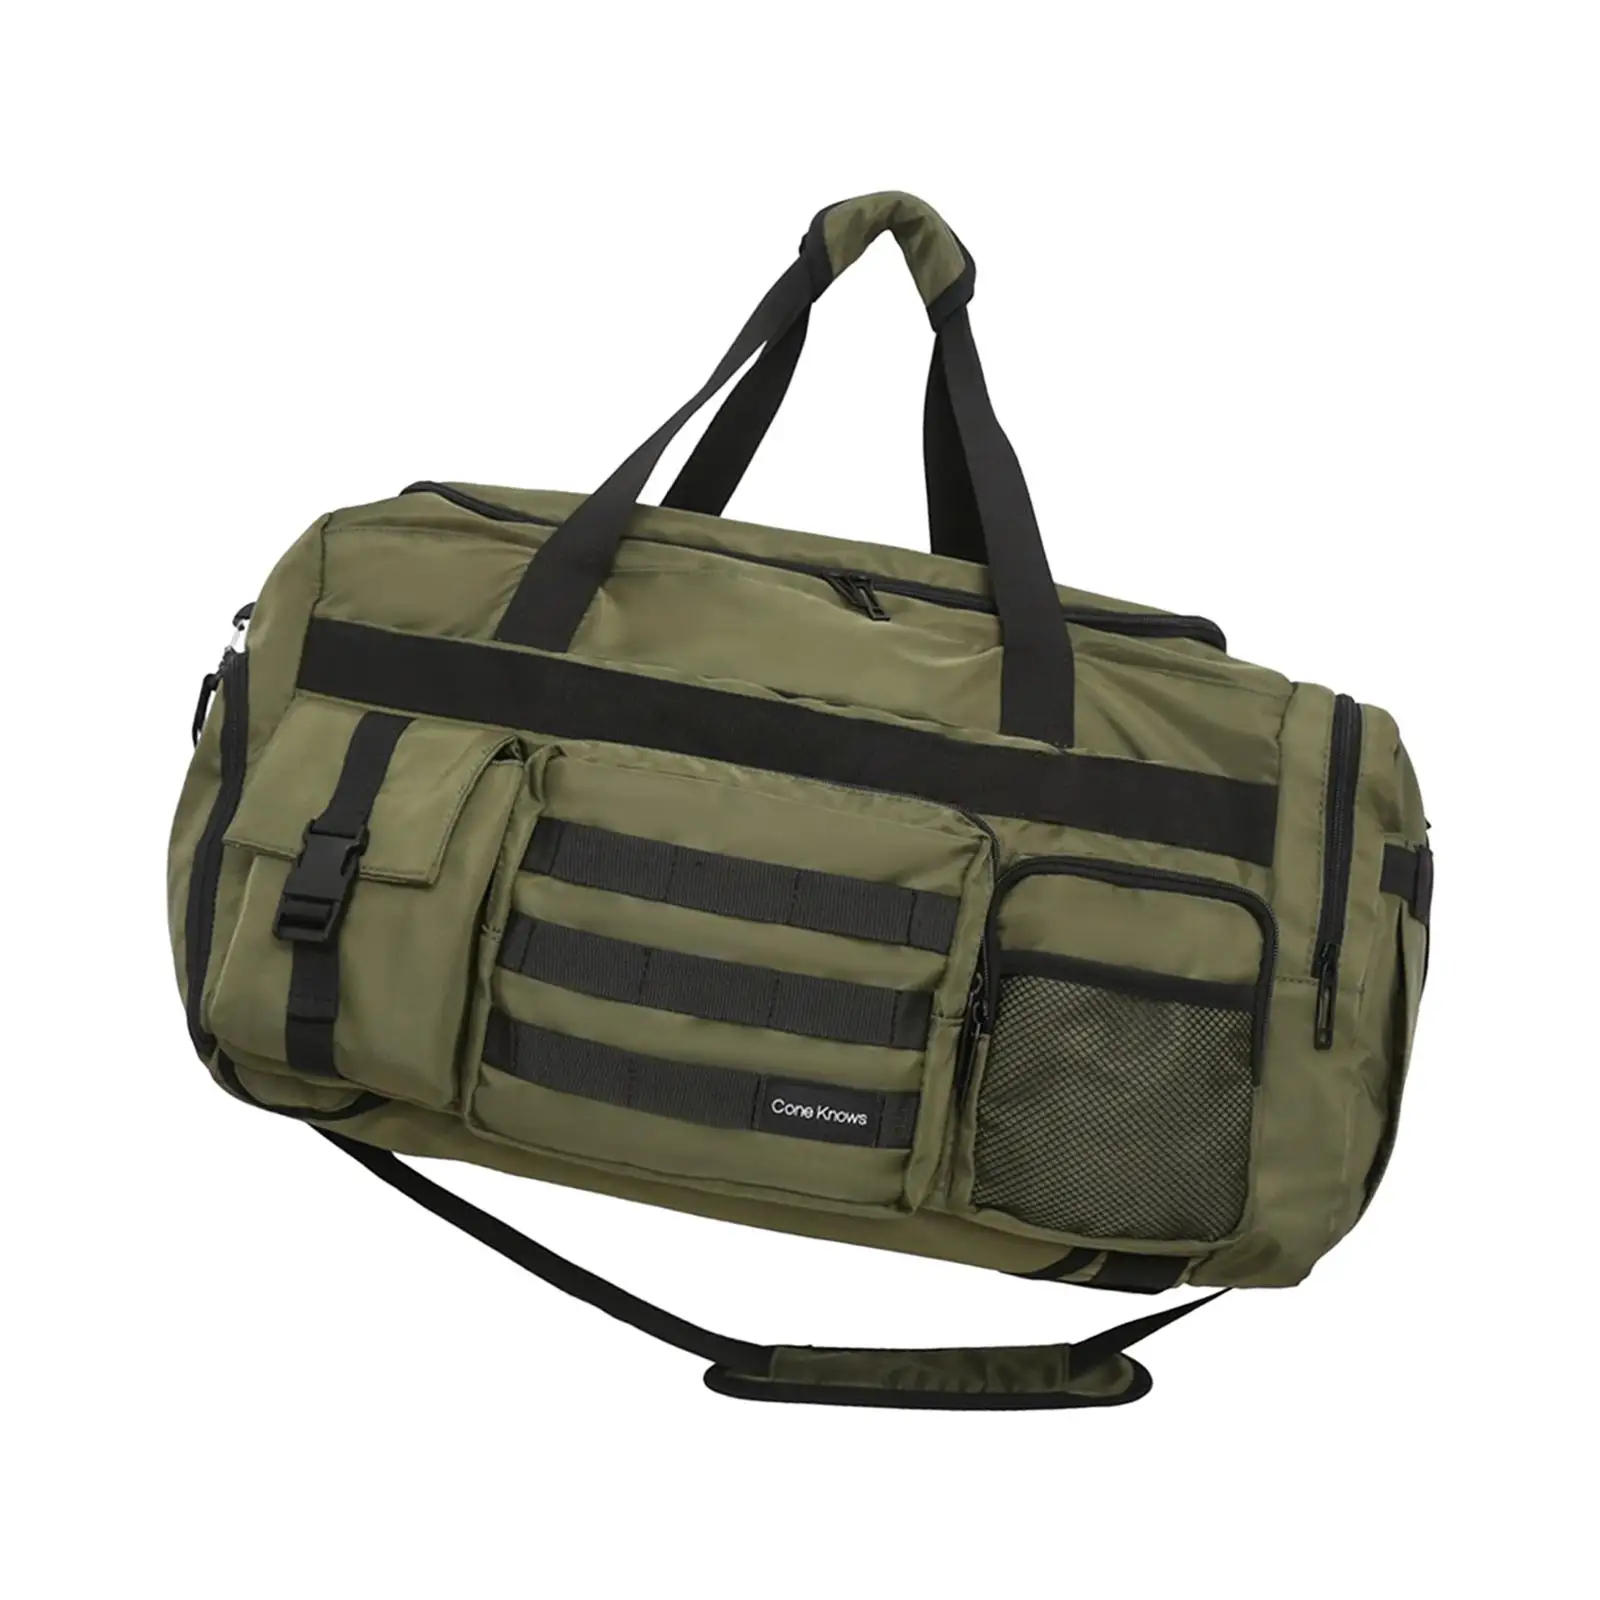 Duffle Backpack Sports Gym Bag Weekender Bag Men Women Toiletry Storage Bag Shoulder Bag for Camping Outddor Exercise Fitness